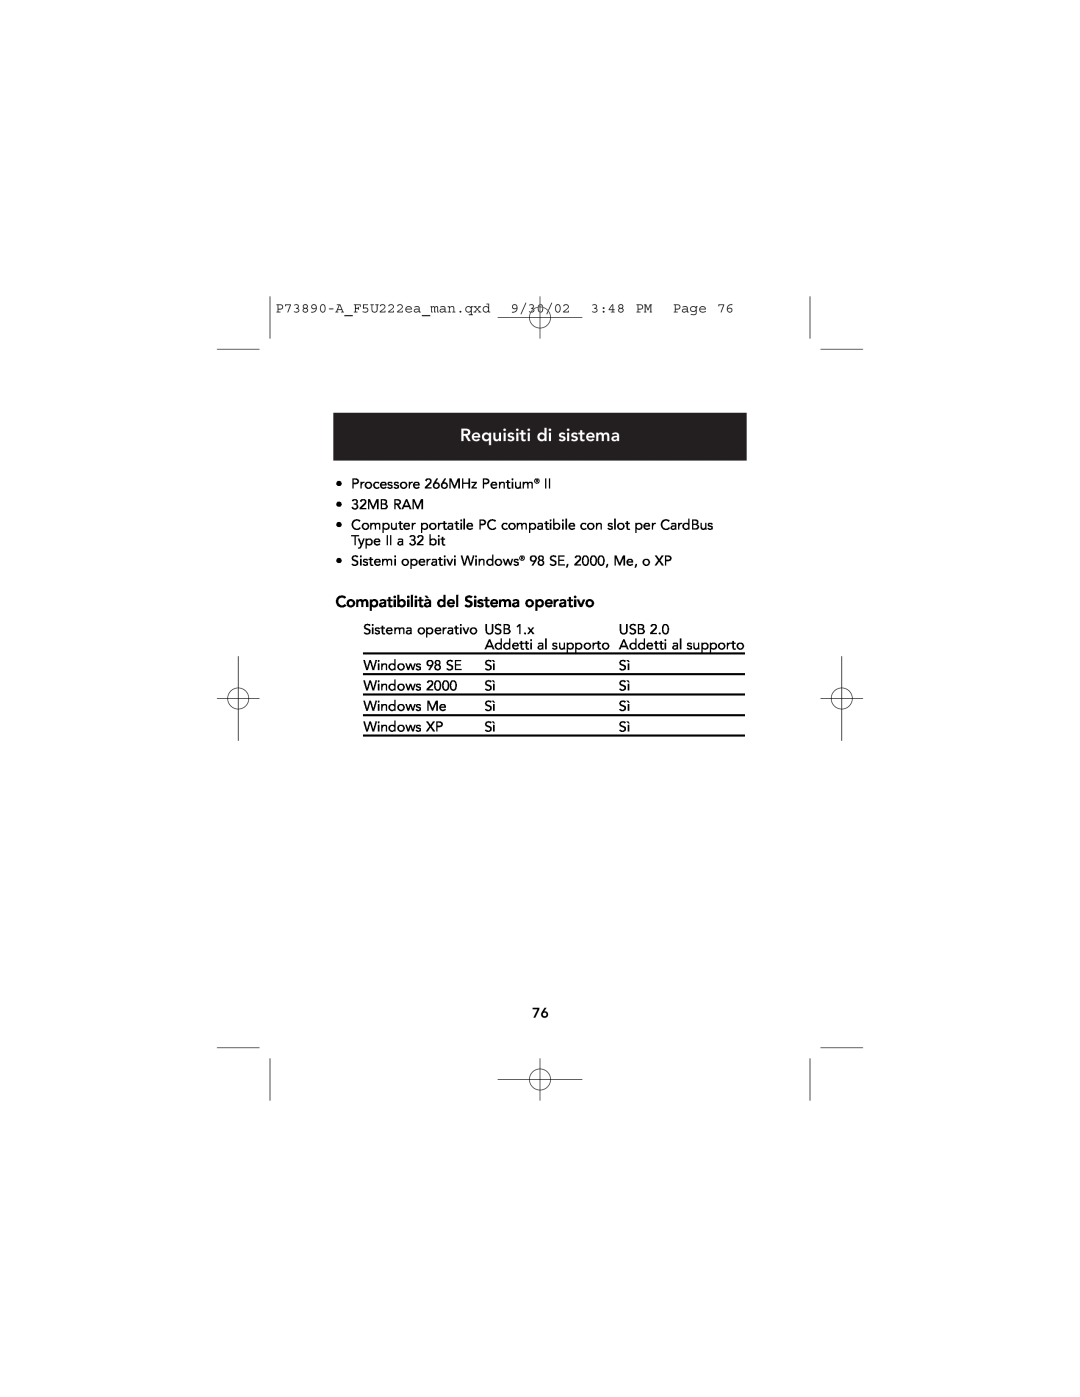 Belkin P73890EA-A manual Requisiti di sistema, Compatibilità del Sistema operativo 